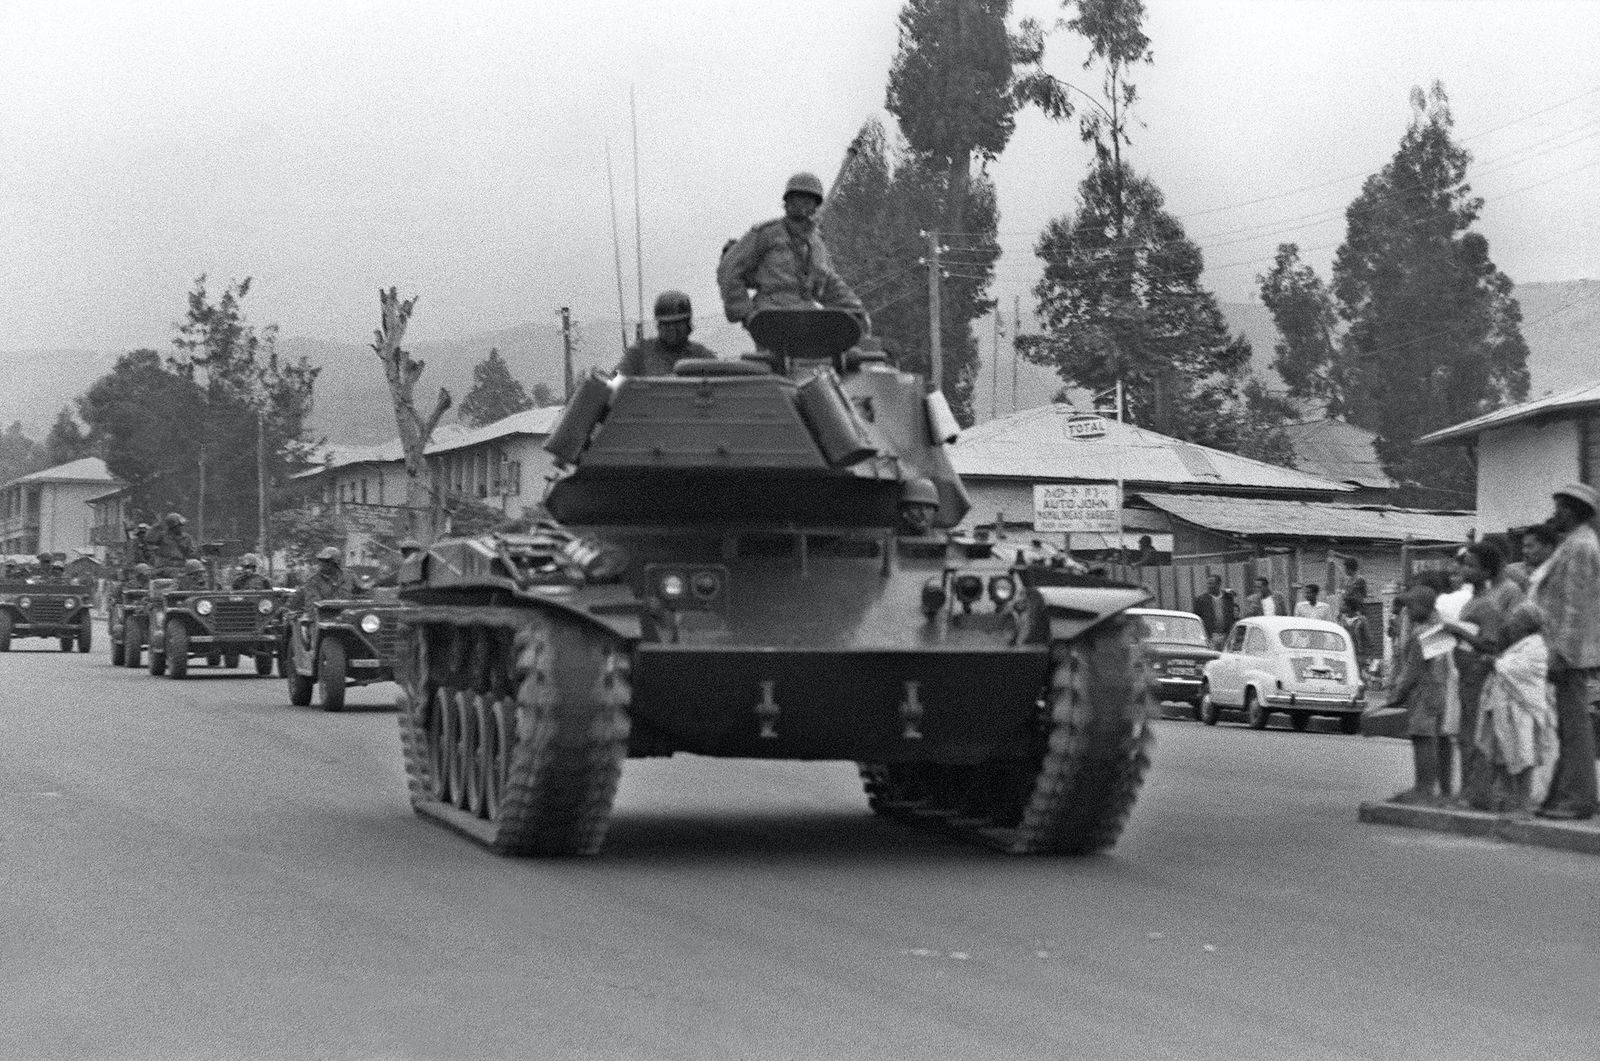 جنود إثيوبيون في أديس أبابا خلال مجريات الانقلاب العسكري الذي انتهى بإسقاط هيلاسي لاسي 23 أغسطس 1964 - AFP